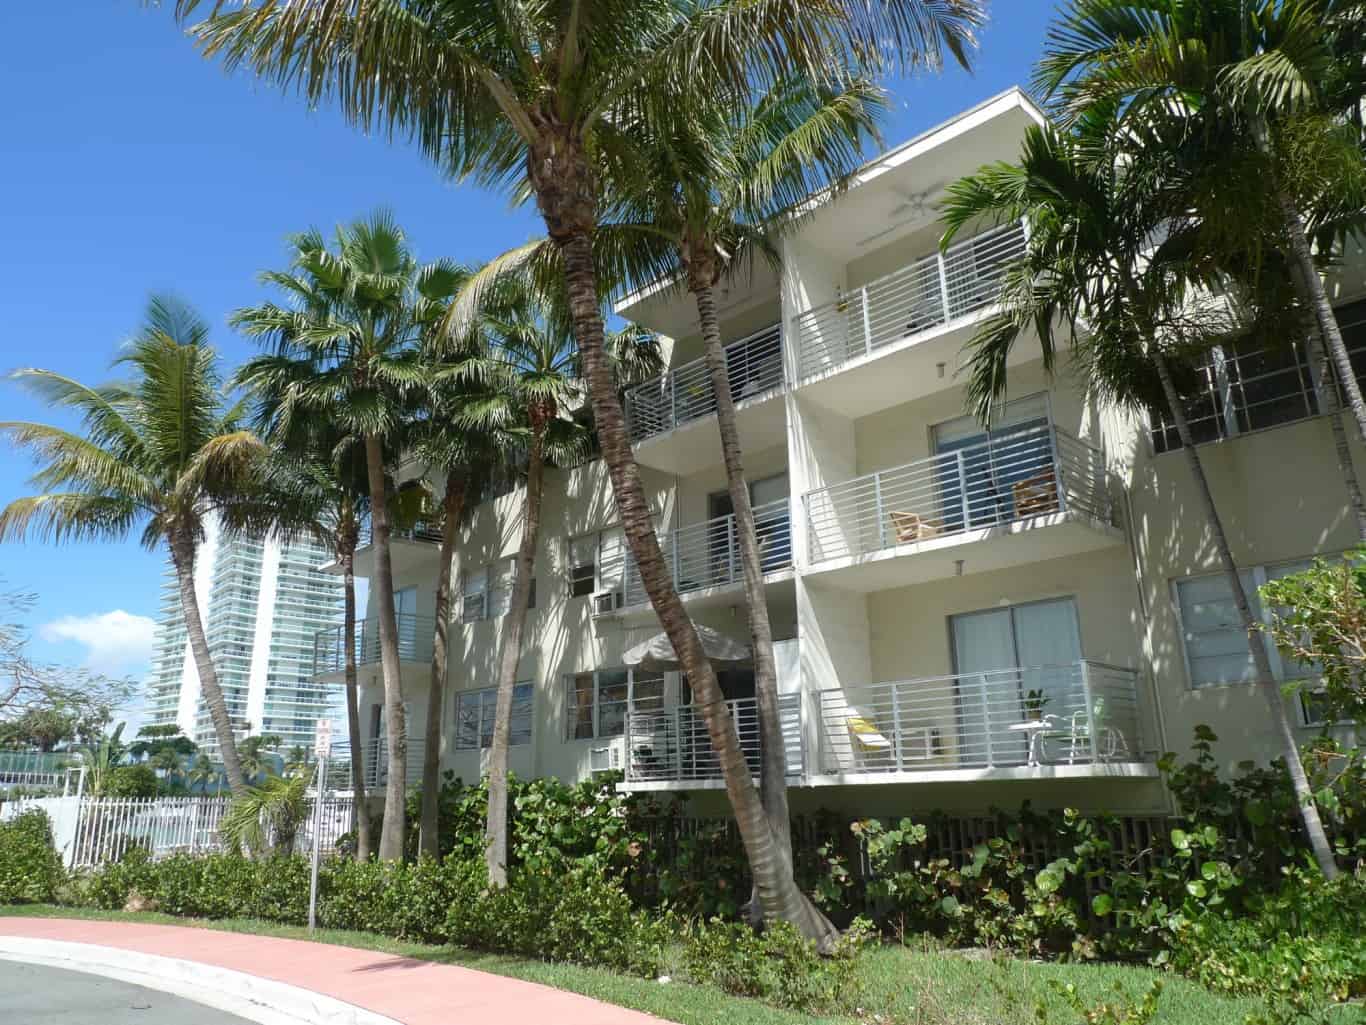 Florida+Housing | Miami Beach Housing